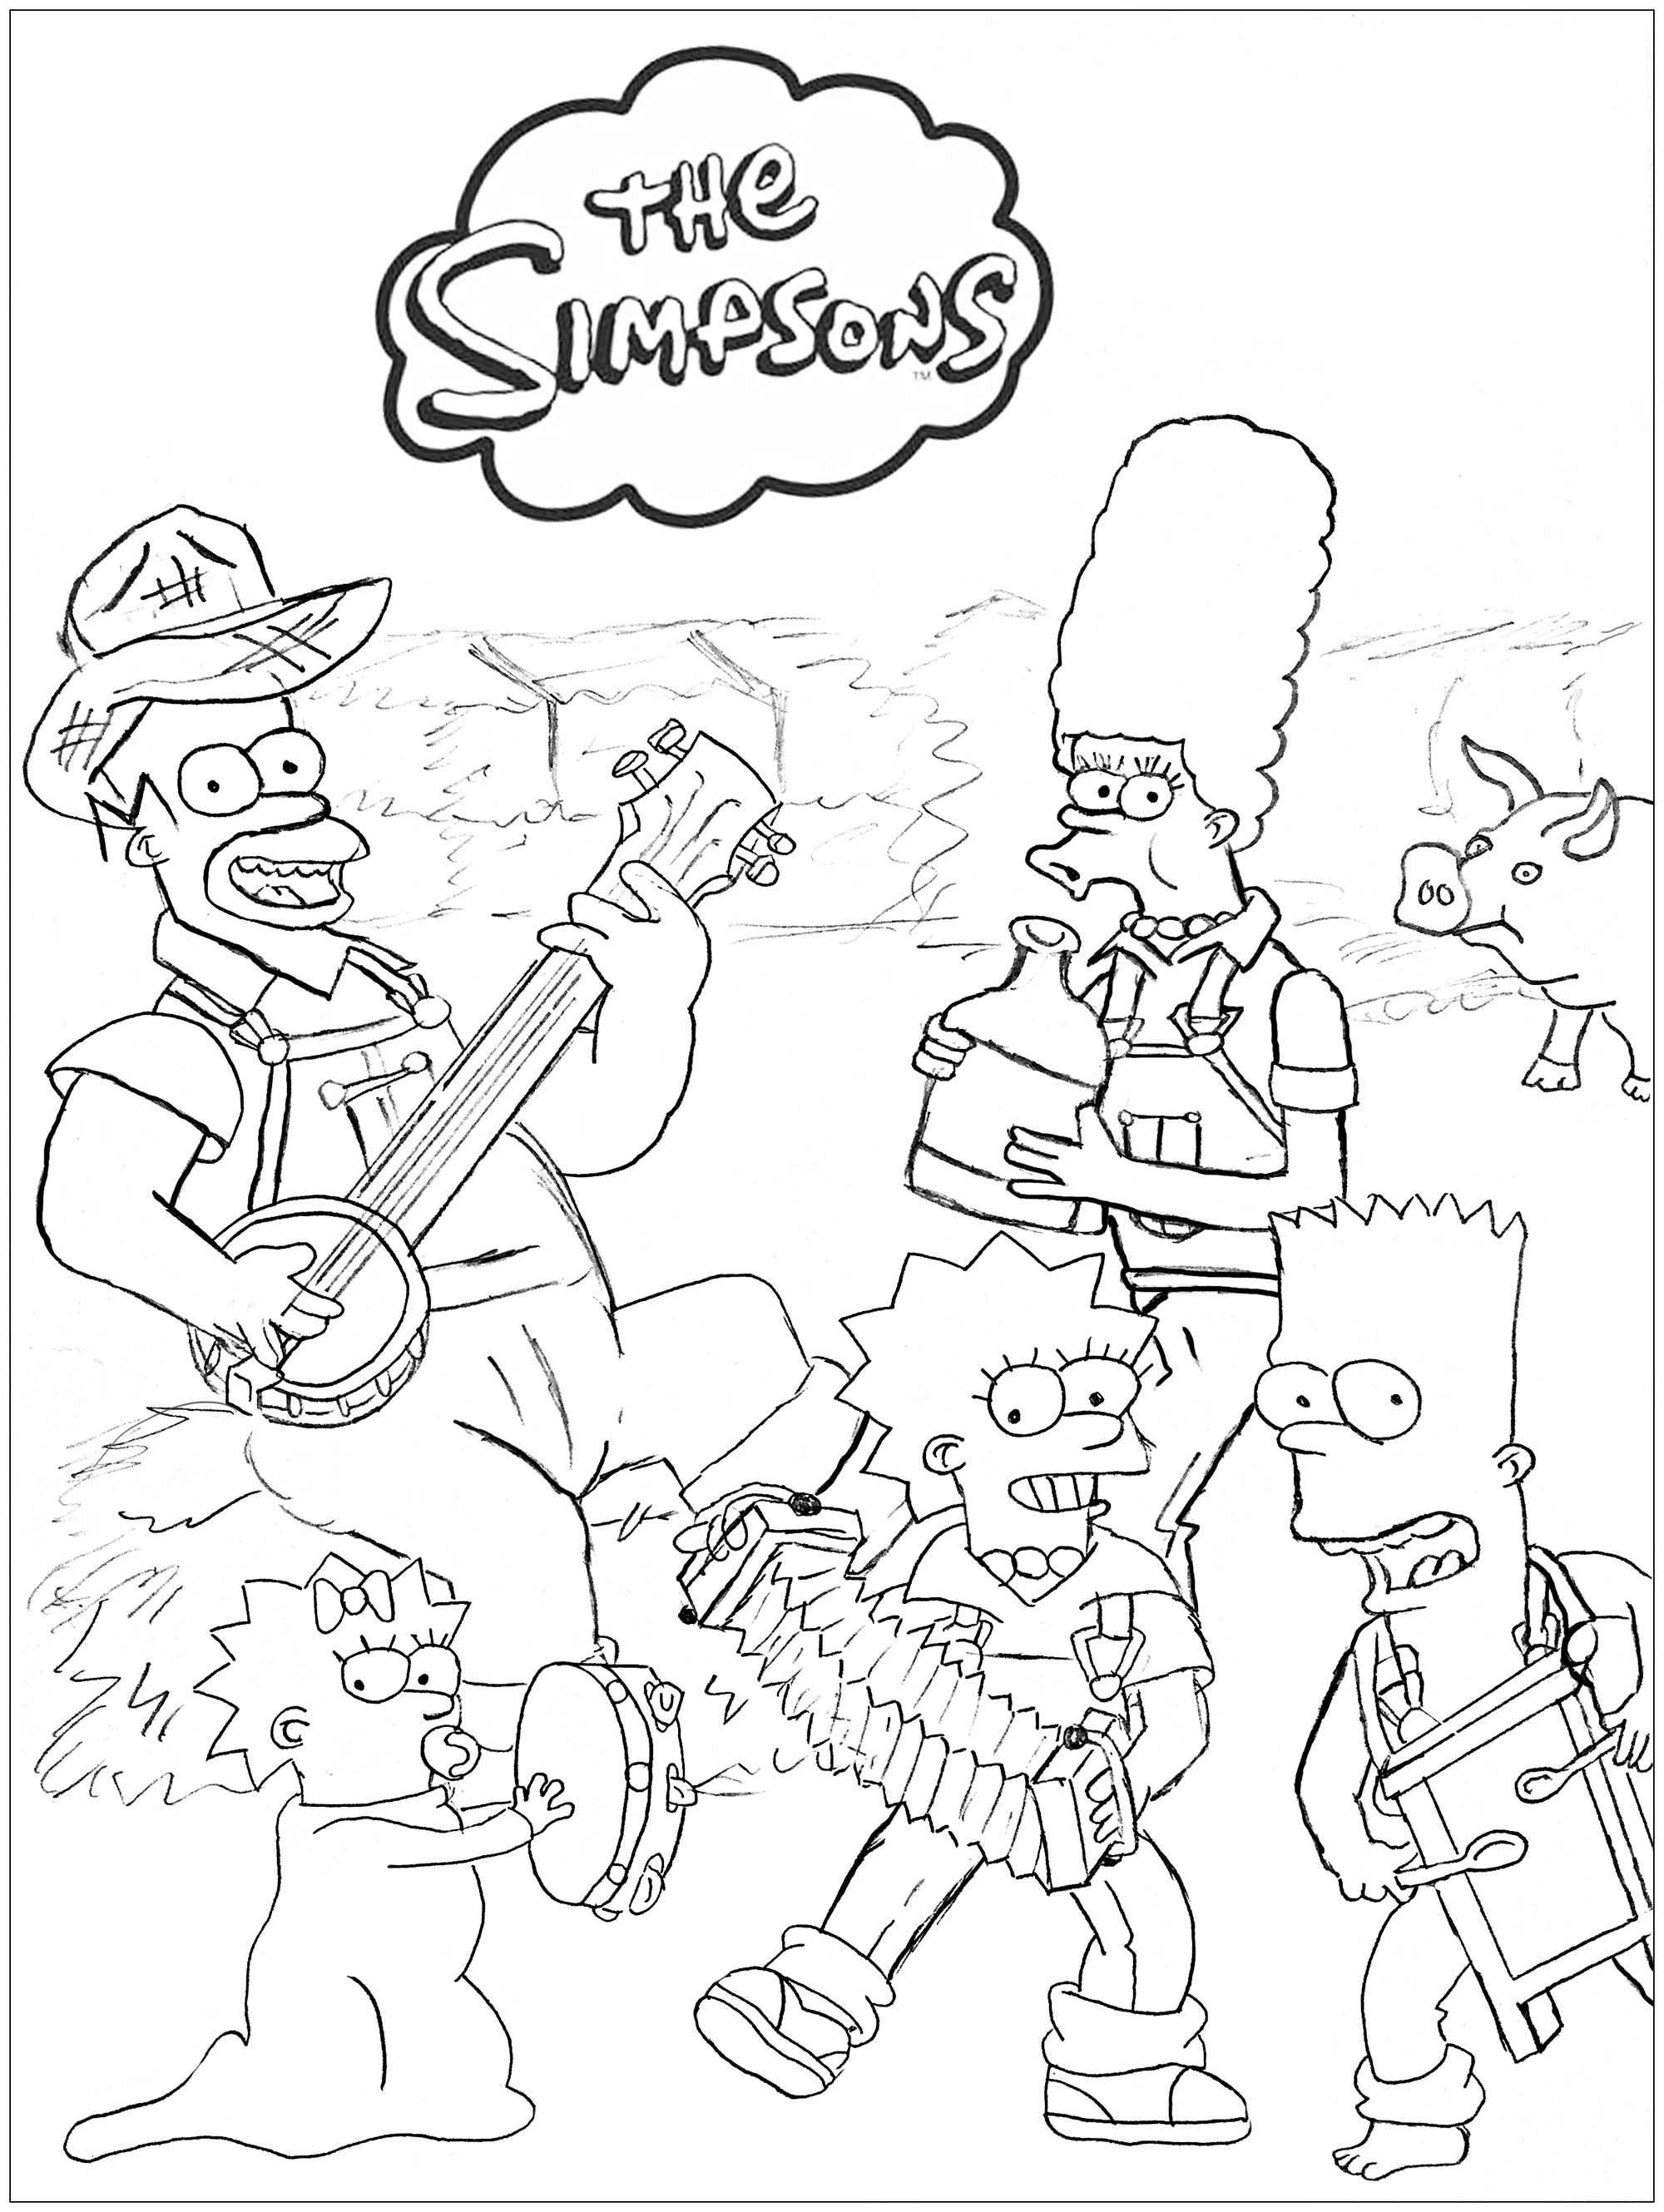 Os Simpsons na quinta: um desenho original criado por Romain